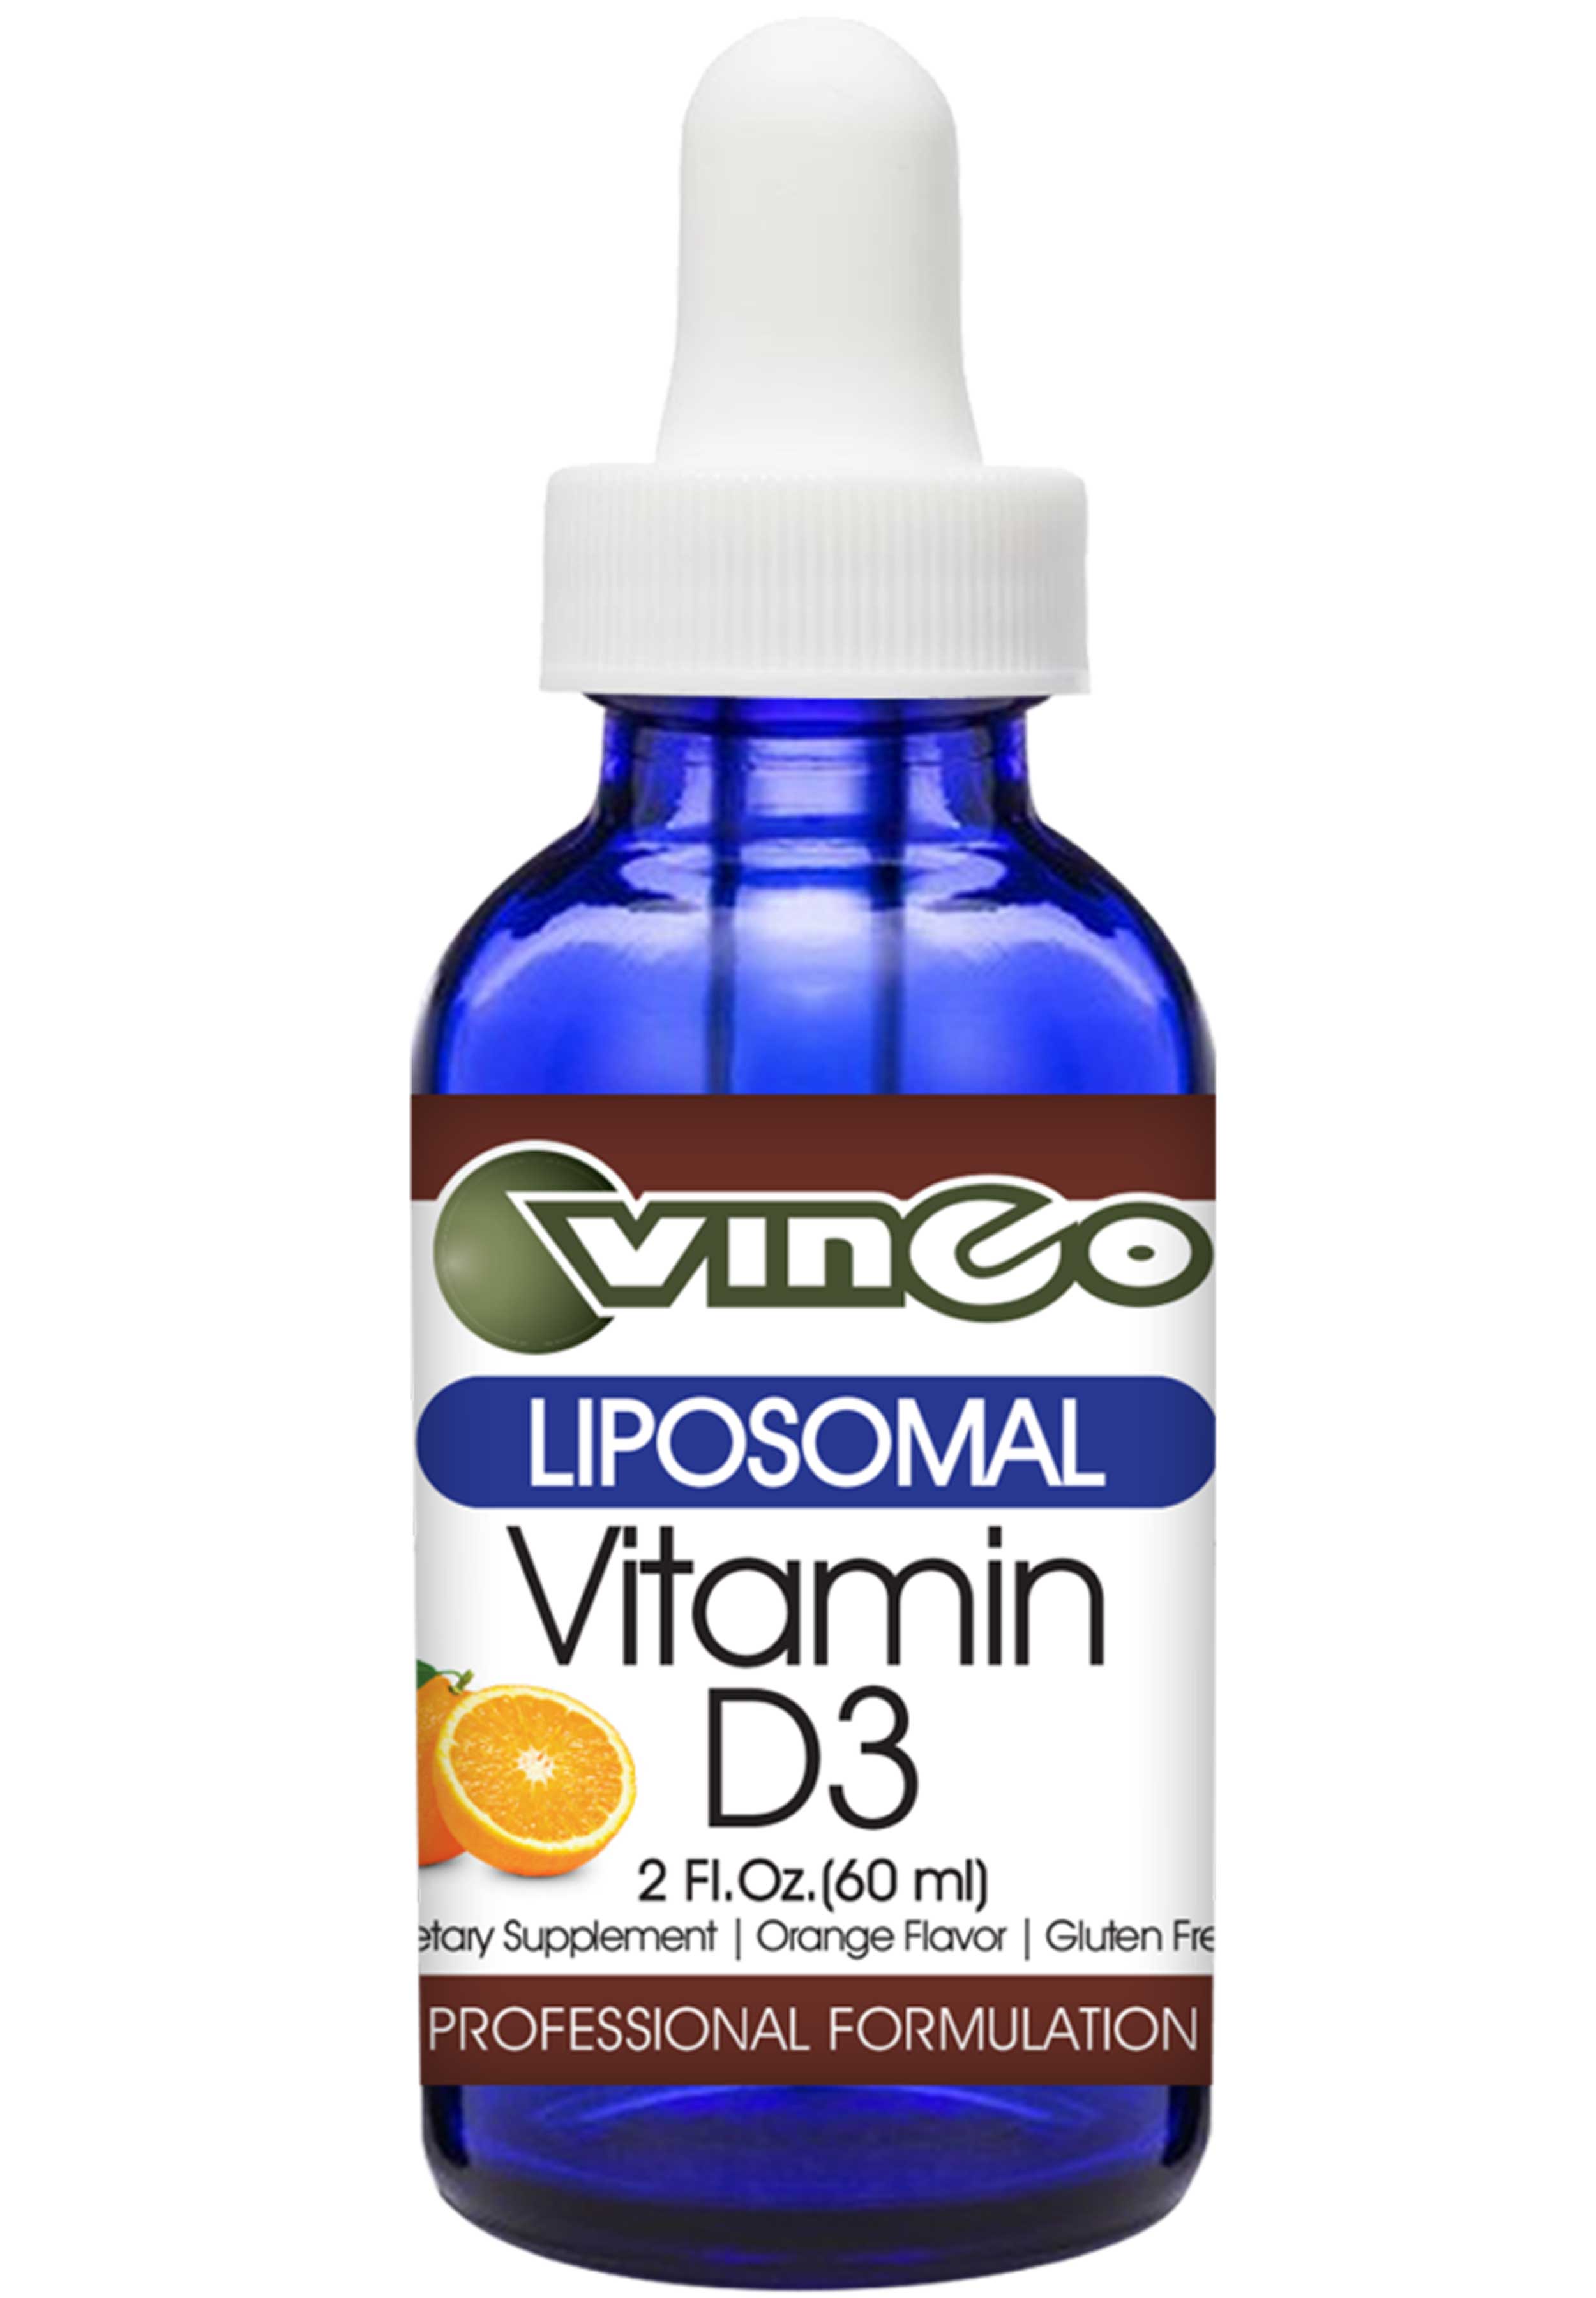 Vinco Vitamin D3 (Liposomal)